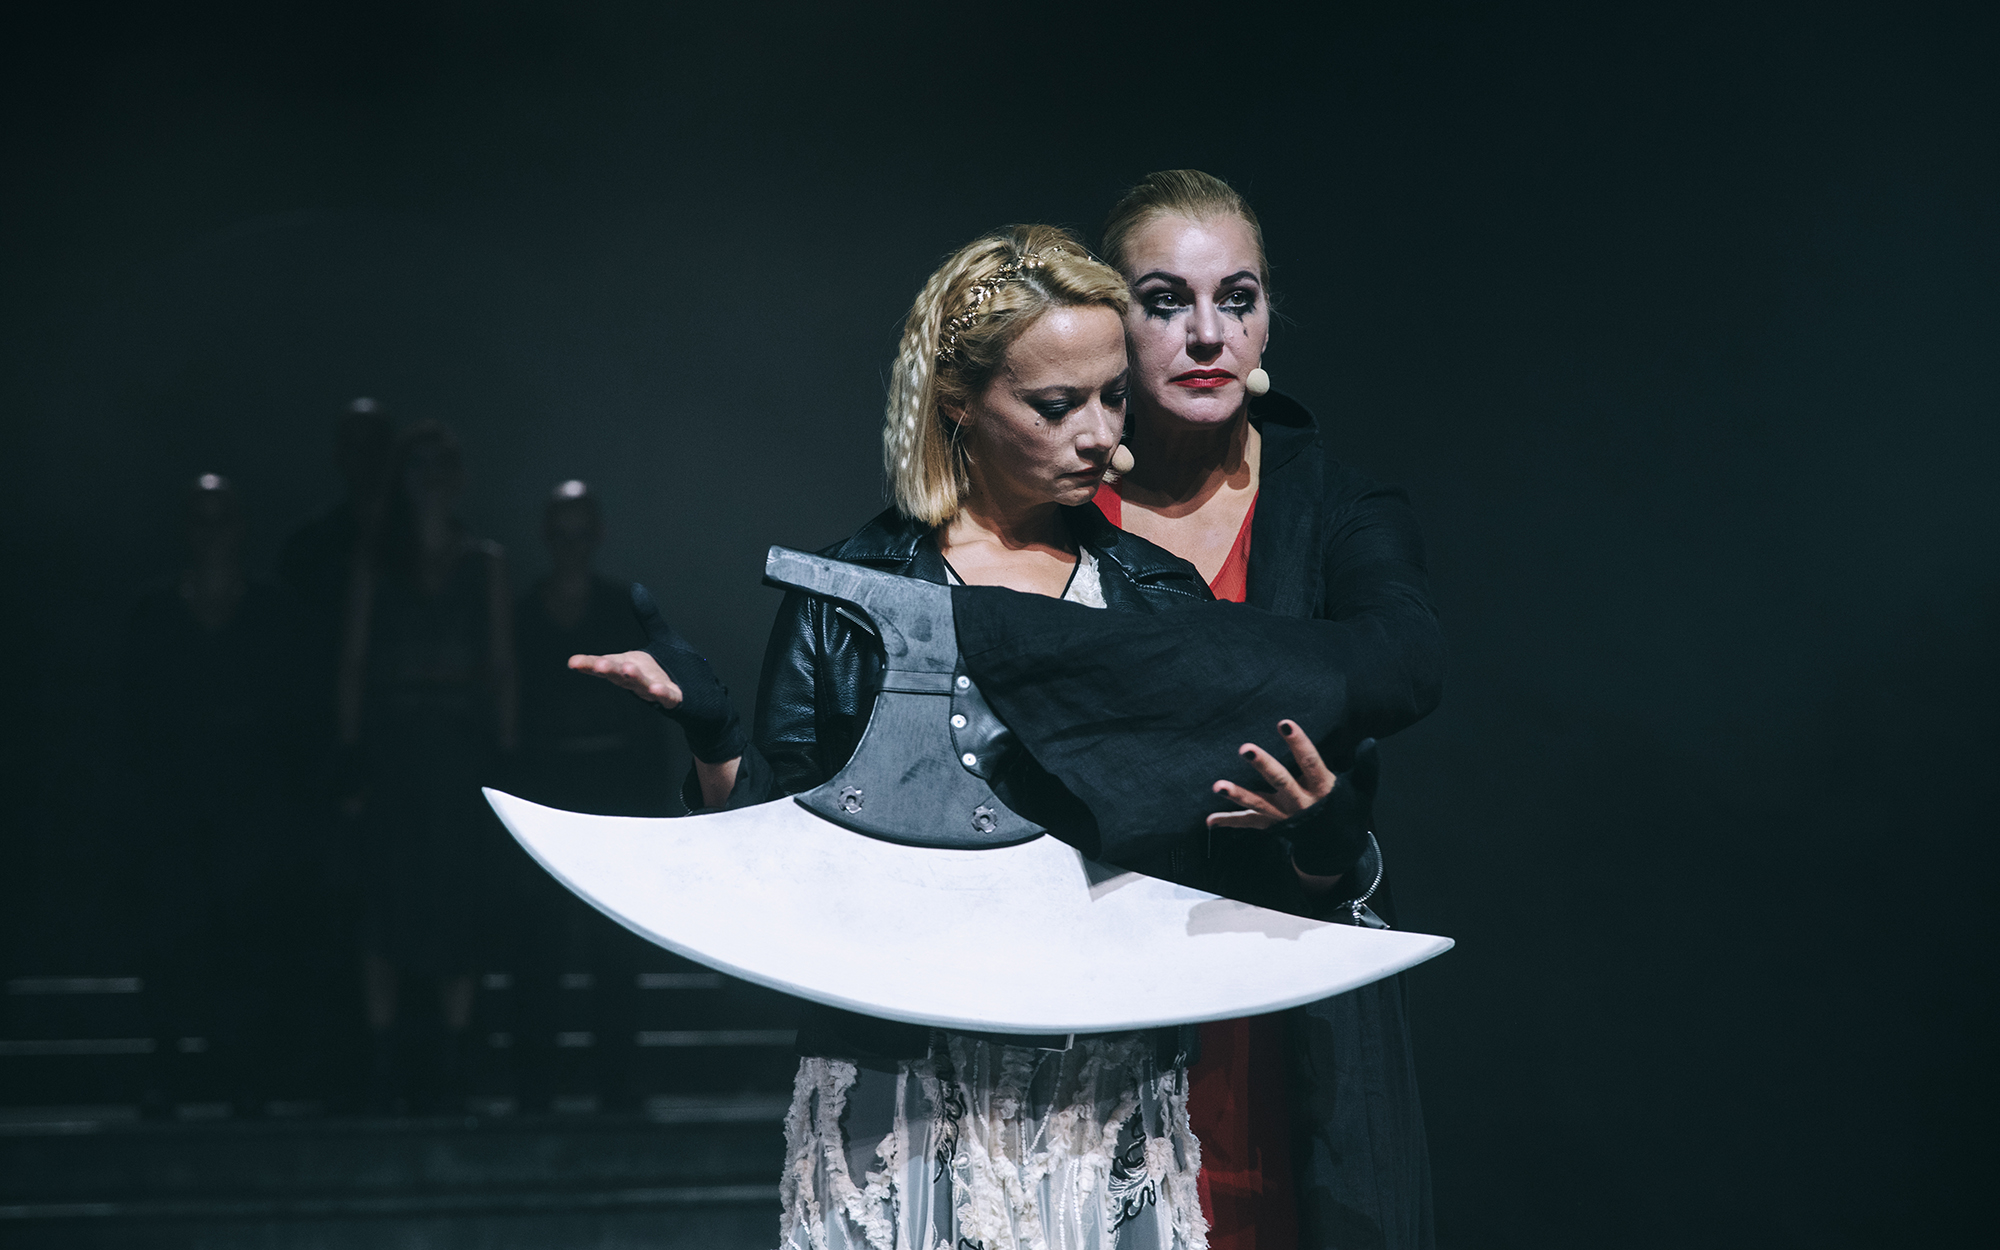 Objokani rabelj (Karin Komljanec) s svojo sekiro v roki objema Turandot (Viktorija Bencik Emeršič).  Avtor fotografije: Peter Giodani.